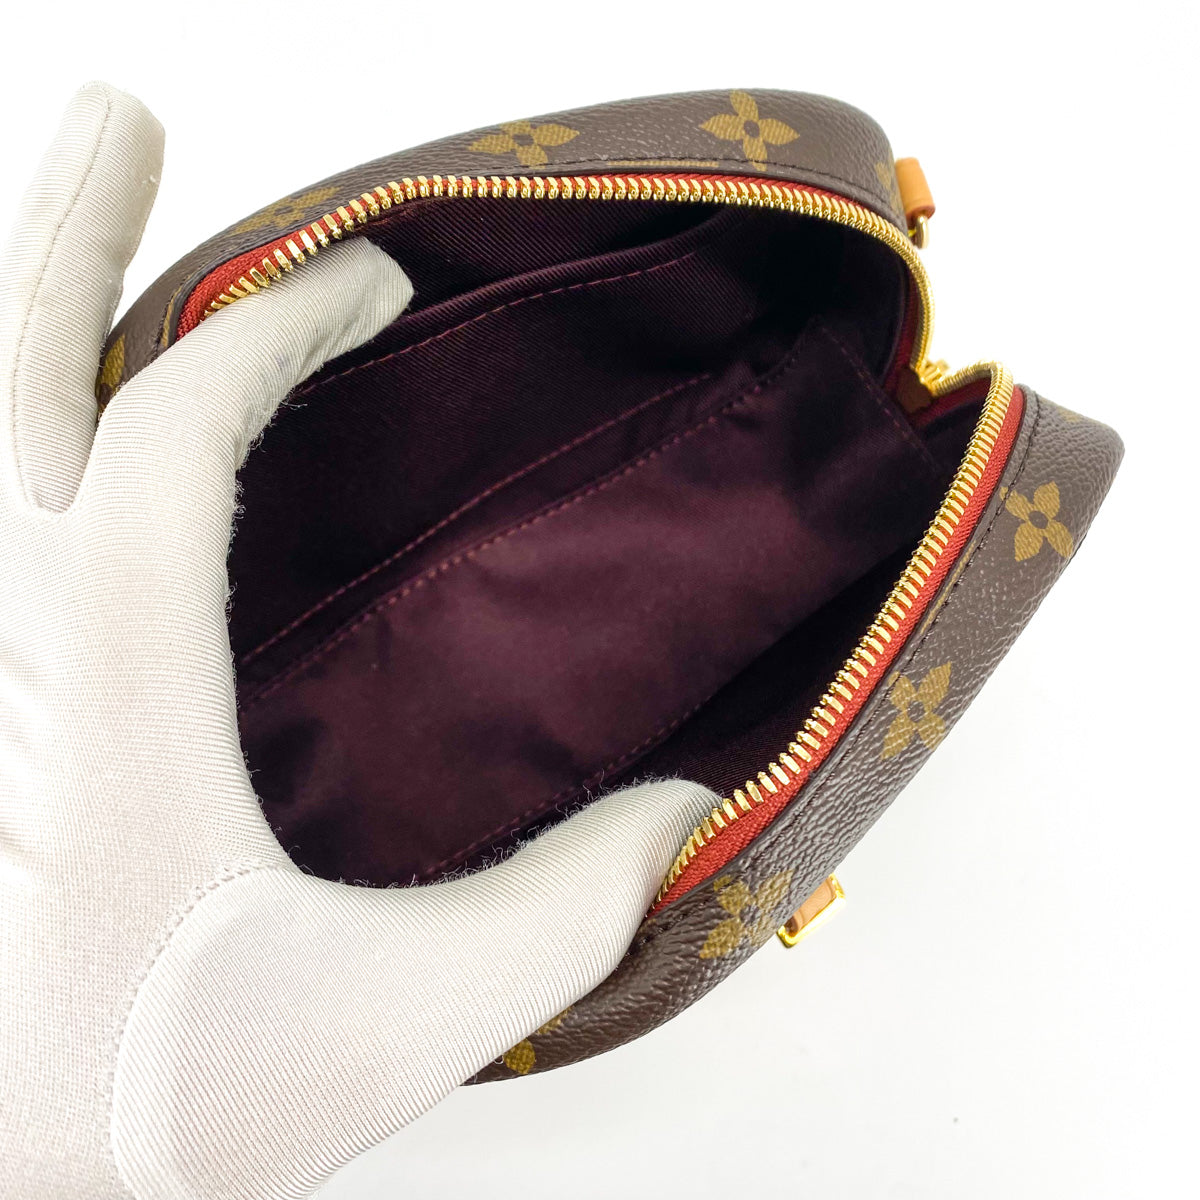 Louis Vuitton Deauville Mini SINCE1854 Nicolas Ghesquière M57205 x Monogram  Jacquard Black PL3270 Women's Shoulder Bag